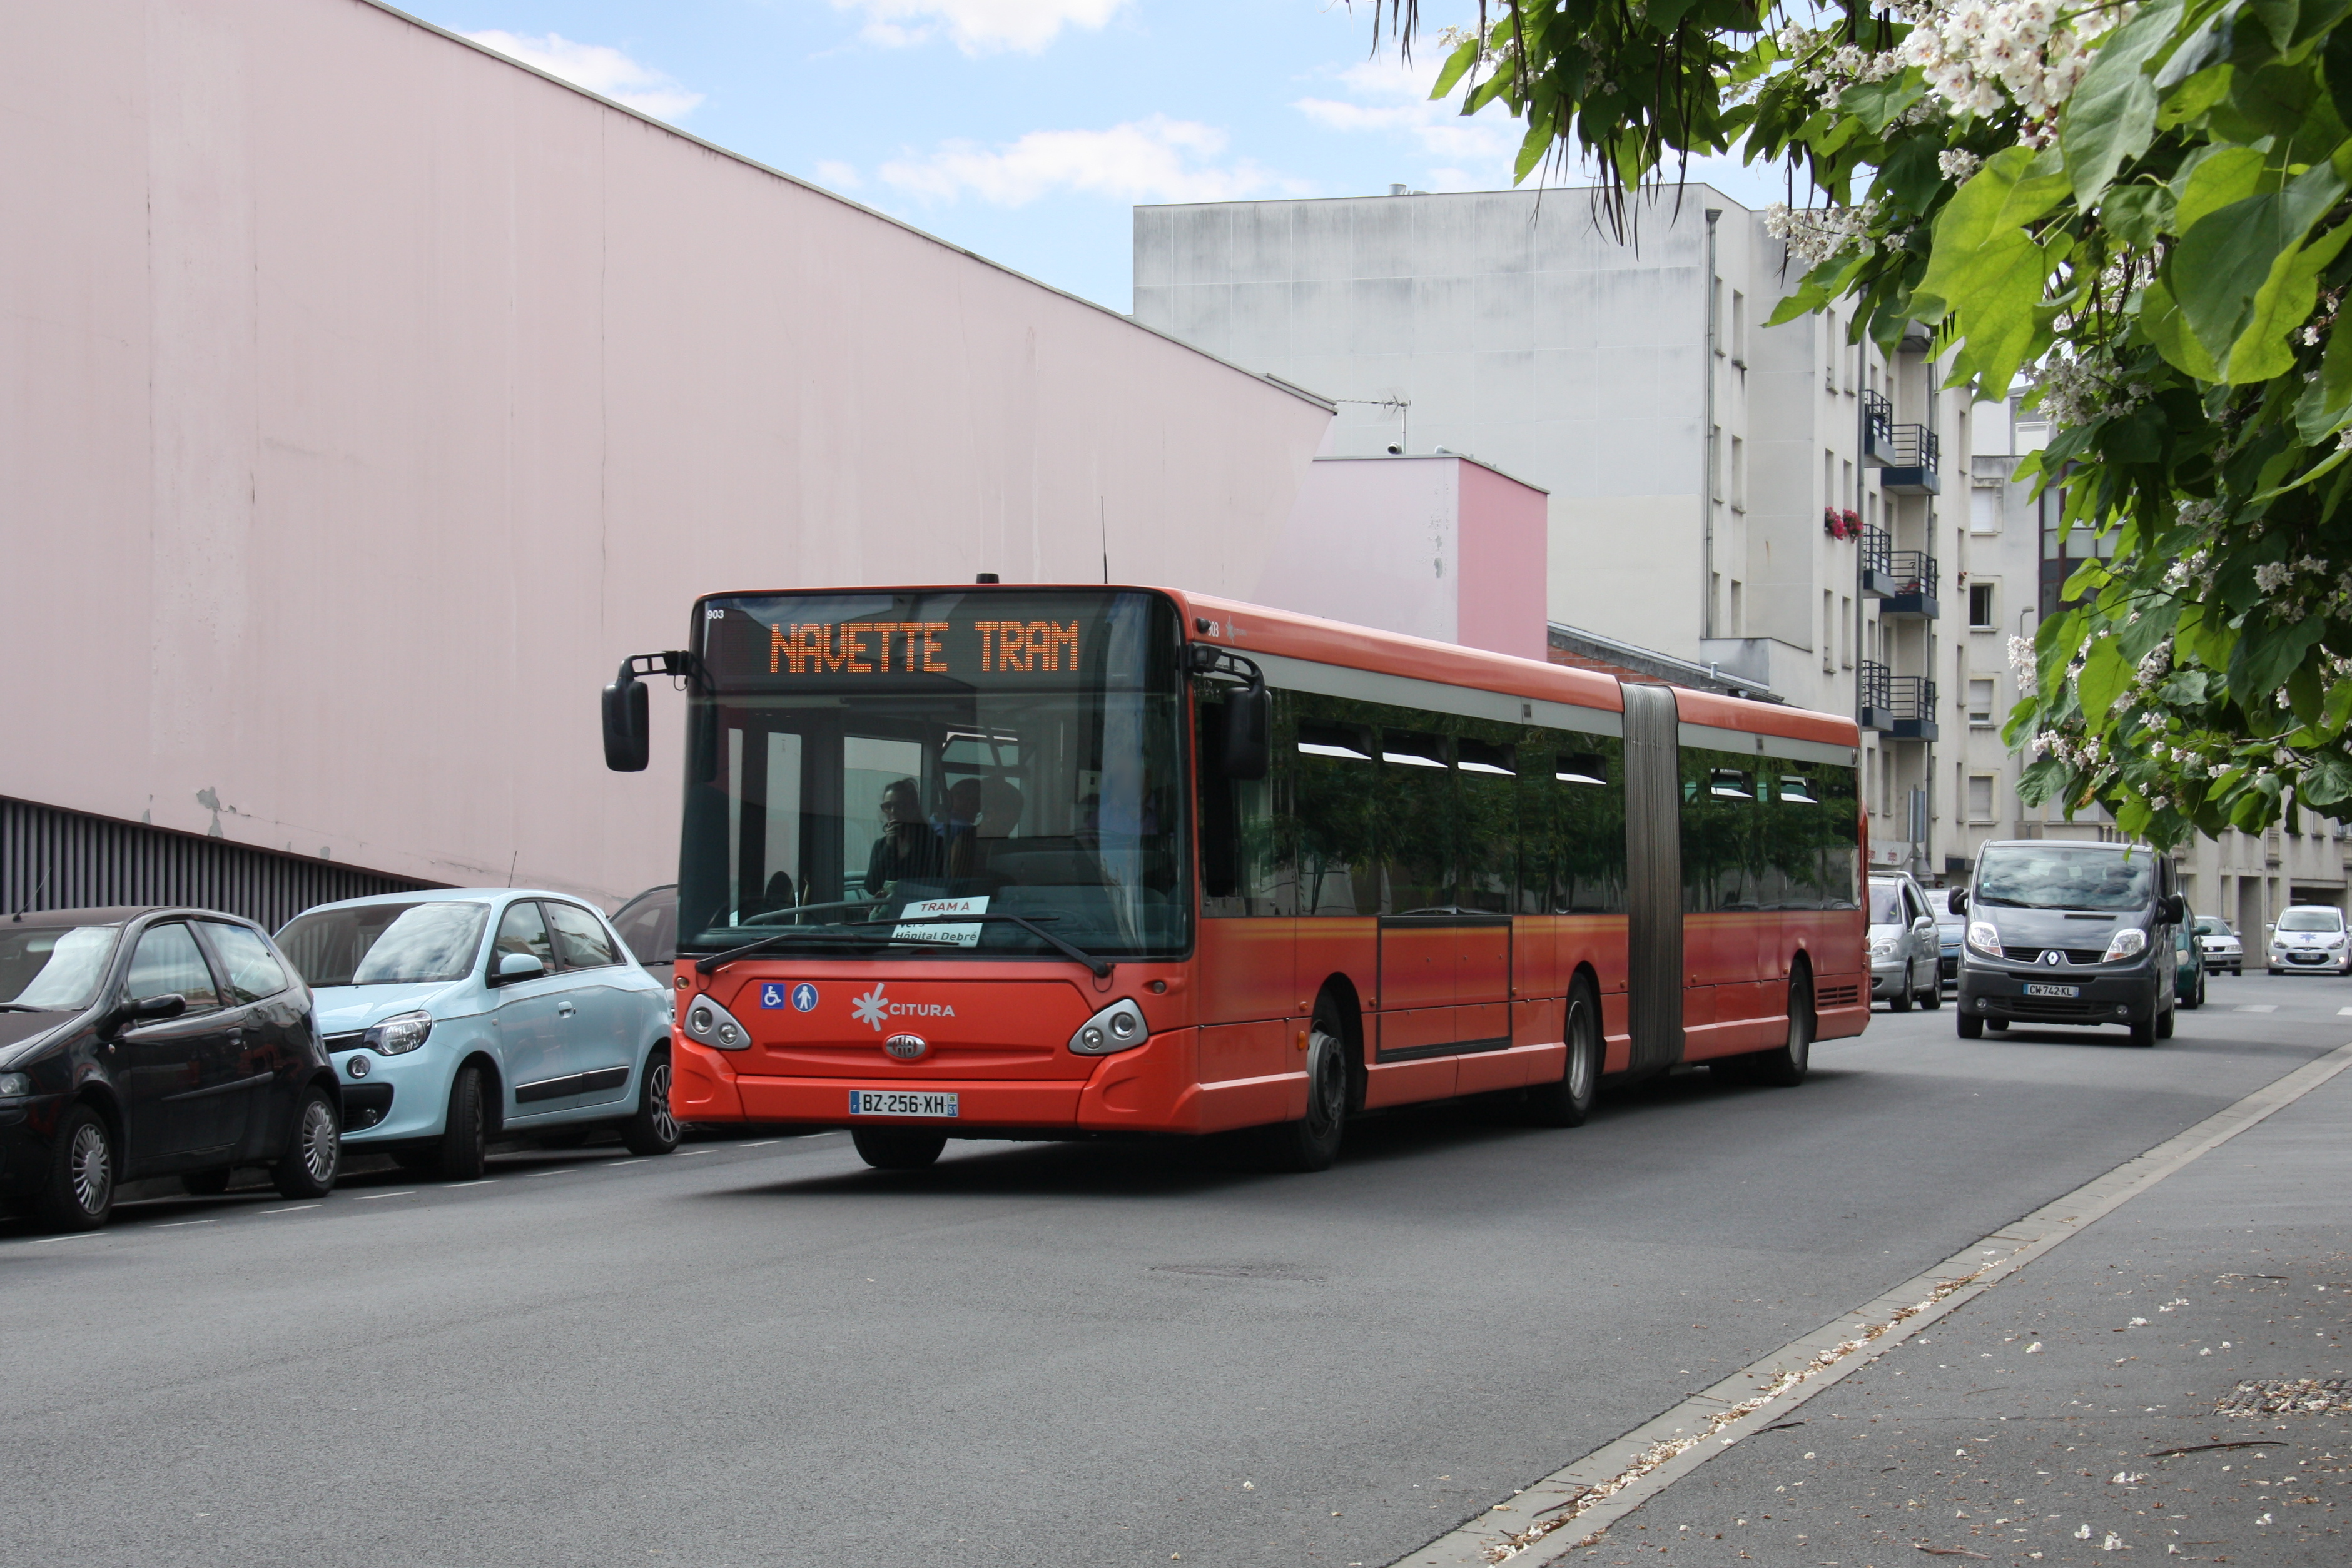 Citura - heuliez bus gx427 n°903 - ligne tram photo